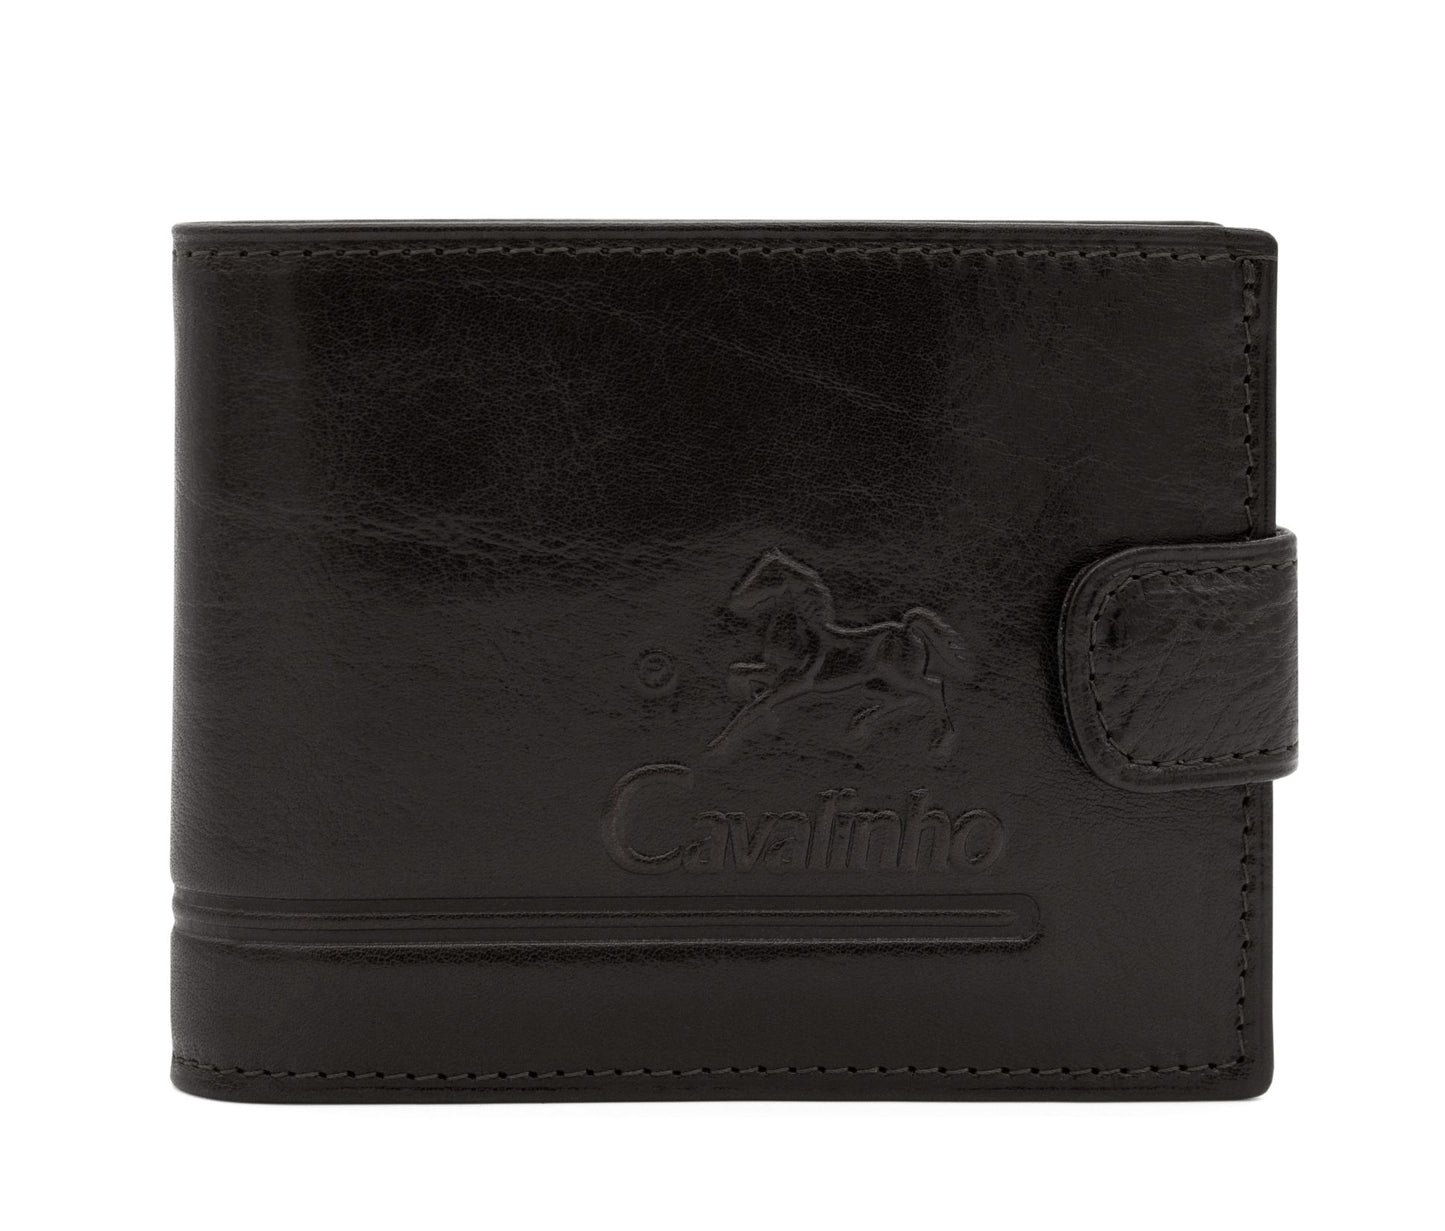 #color_ Black | Cavalinho Men's Trifold Leather Wallet - Black - 28610503.01_1